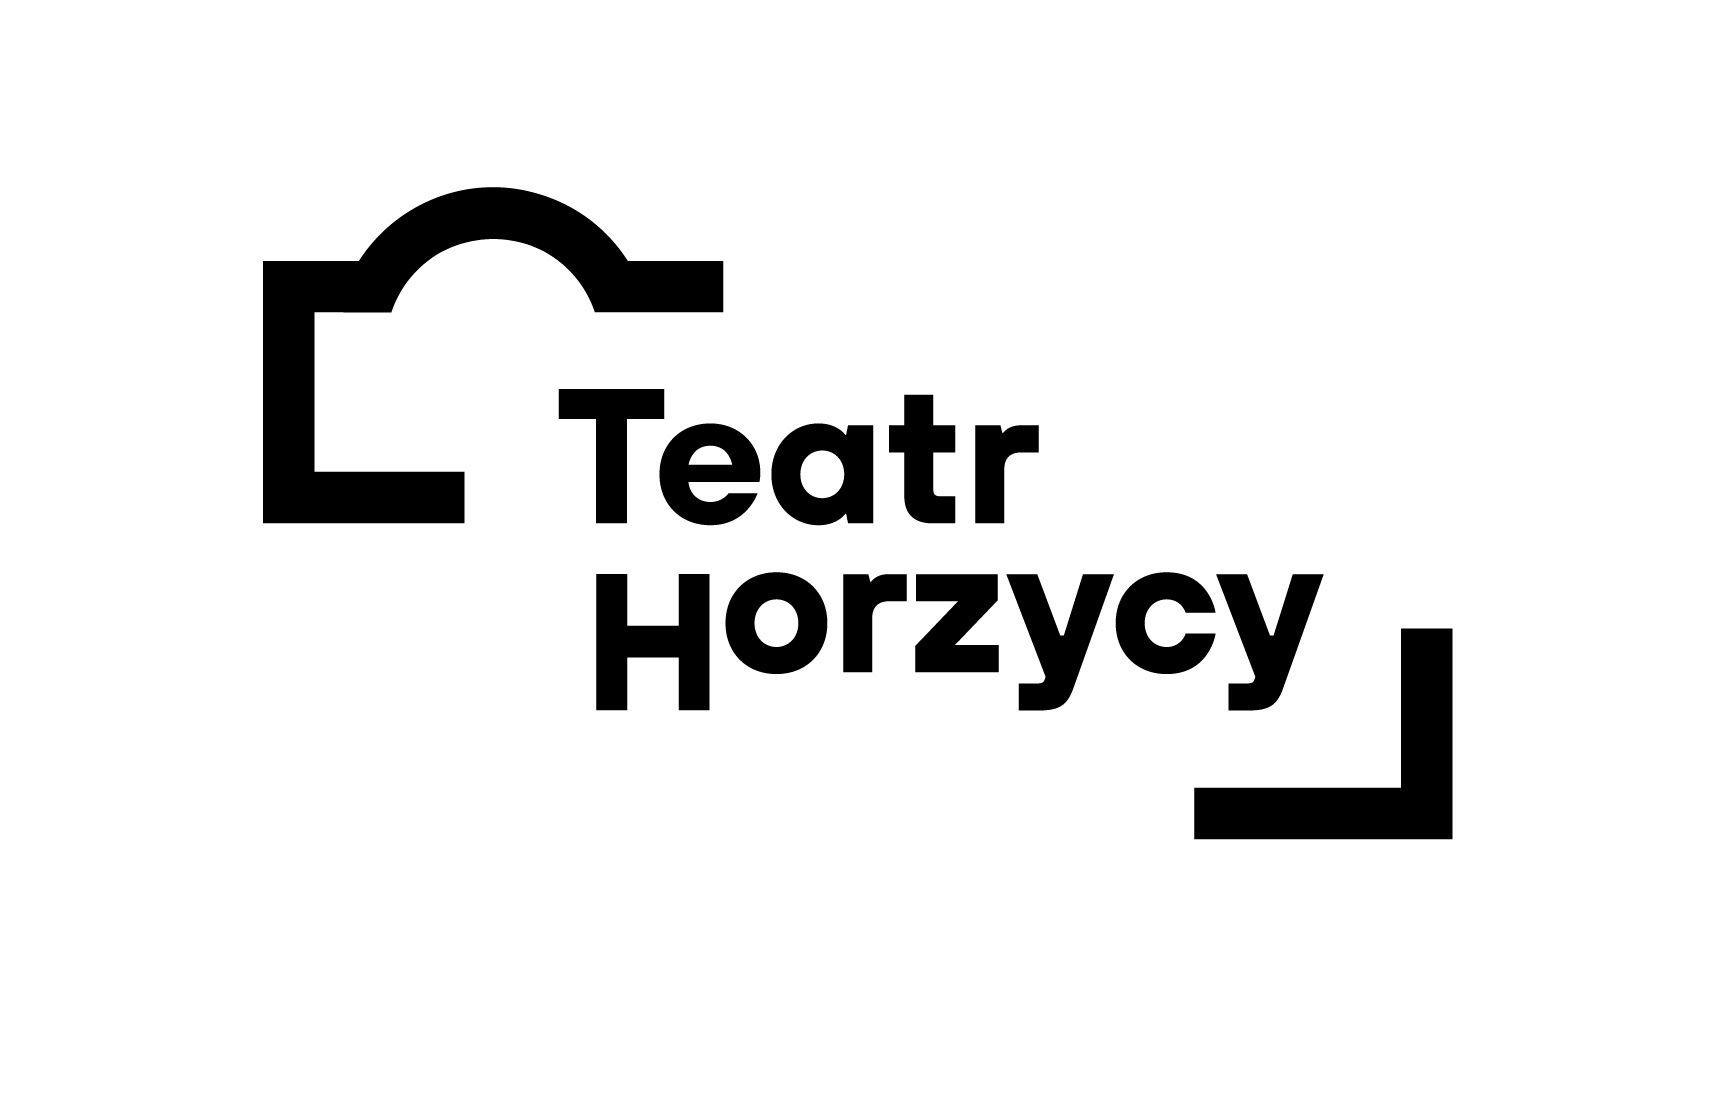 Napis Teatr Horzycy w środku grafiki przypominającej kształtem budynek teatru.